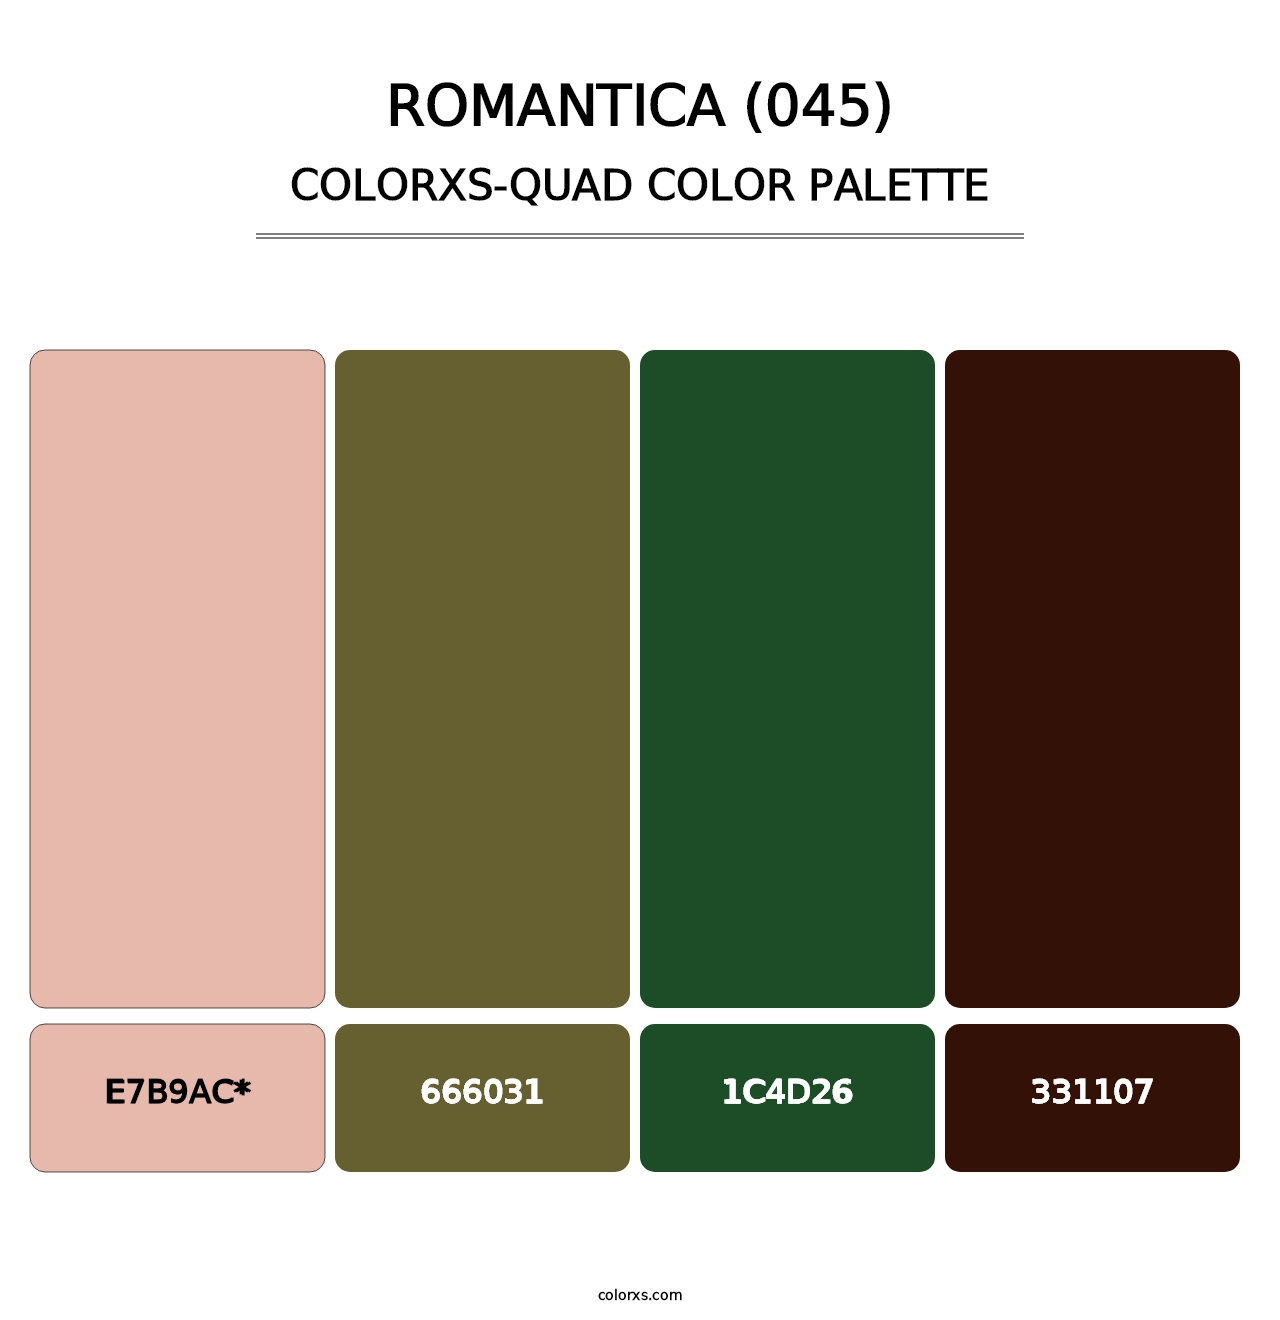 Romantica (045) - Colorxs Quad Palette